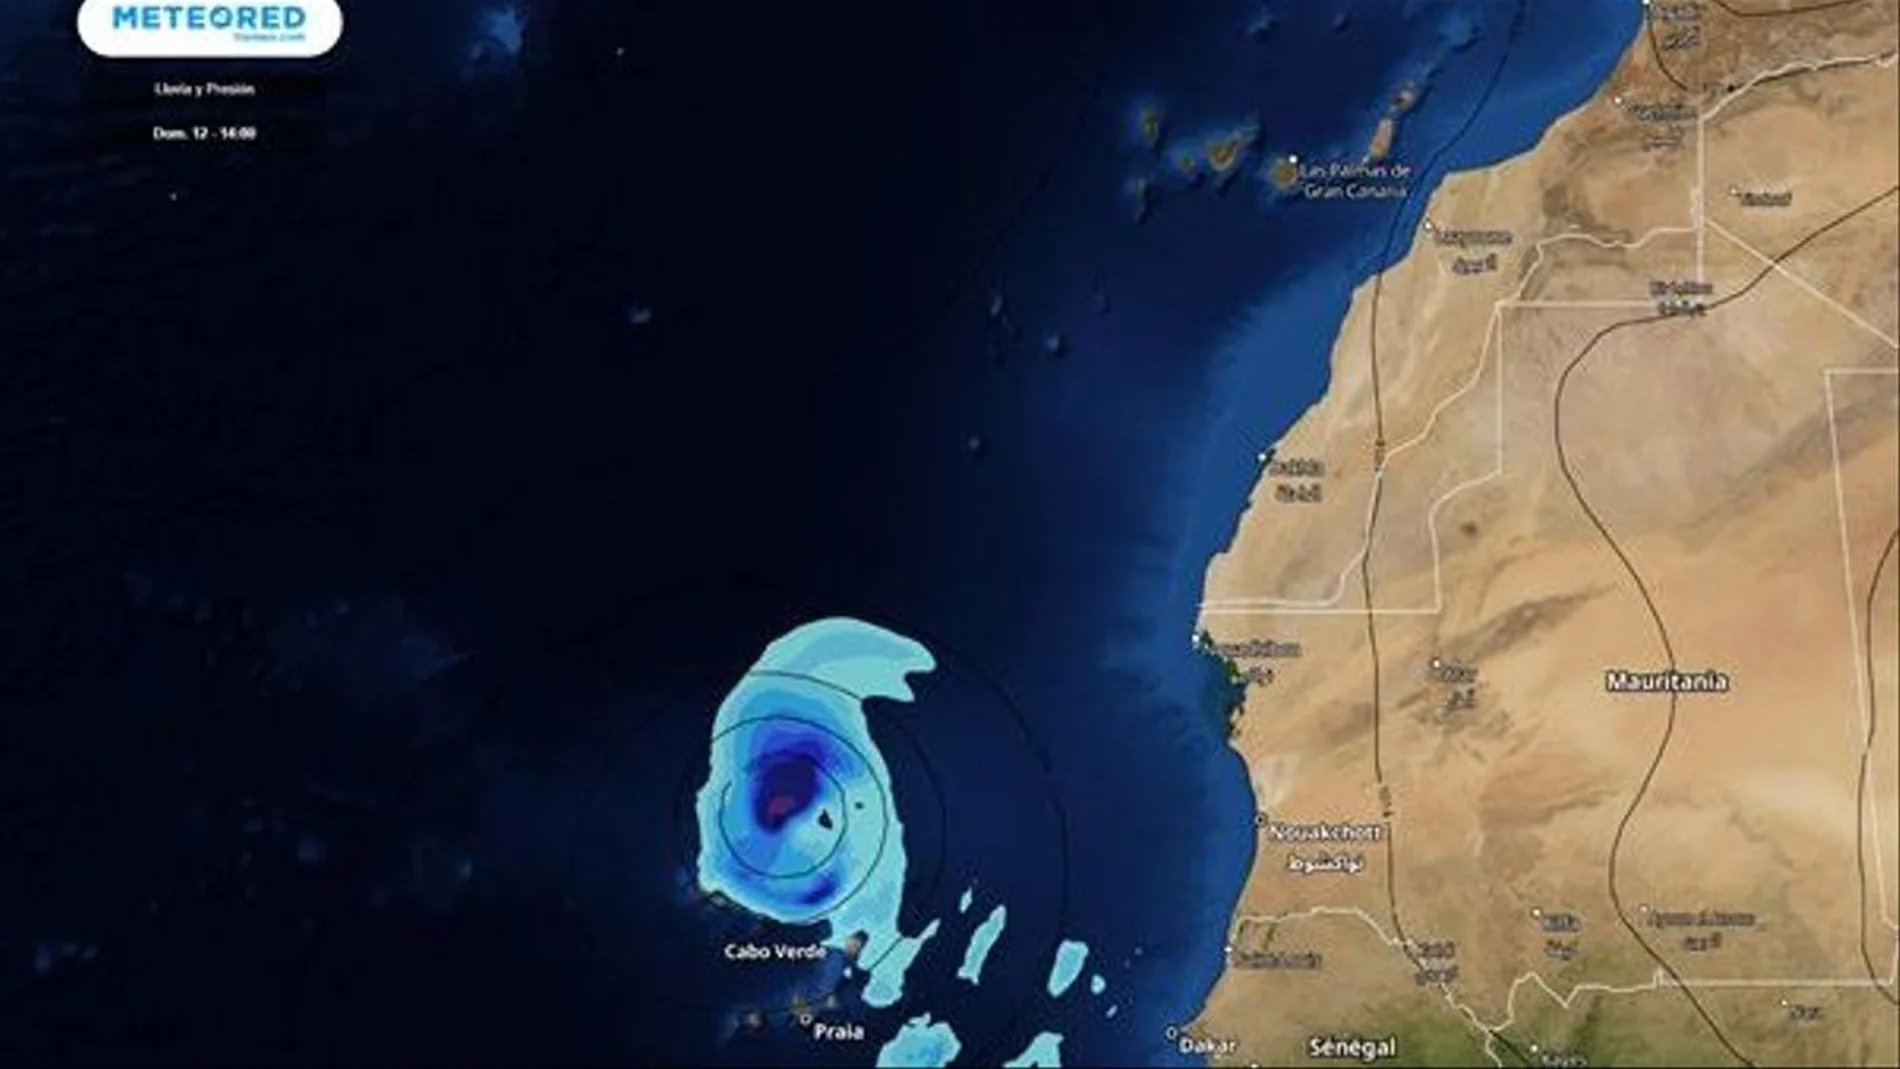 Posible ciclón tropical al norte de Cabo Verde y con tendencia a aproximarse ligeramente a Canarias (mapa con la previsión para el domingo).